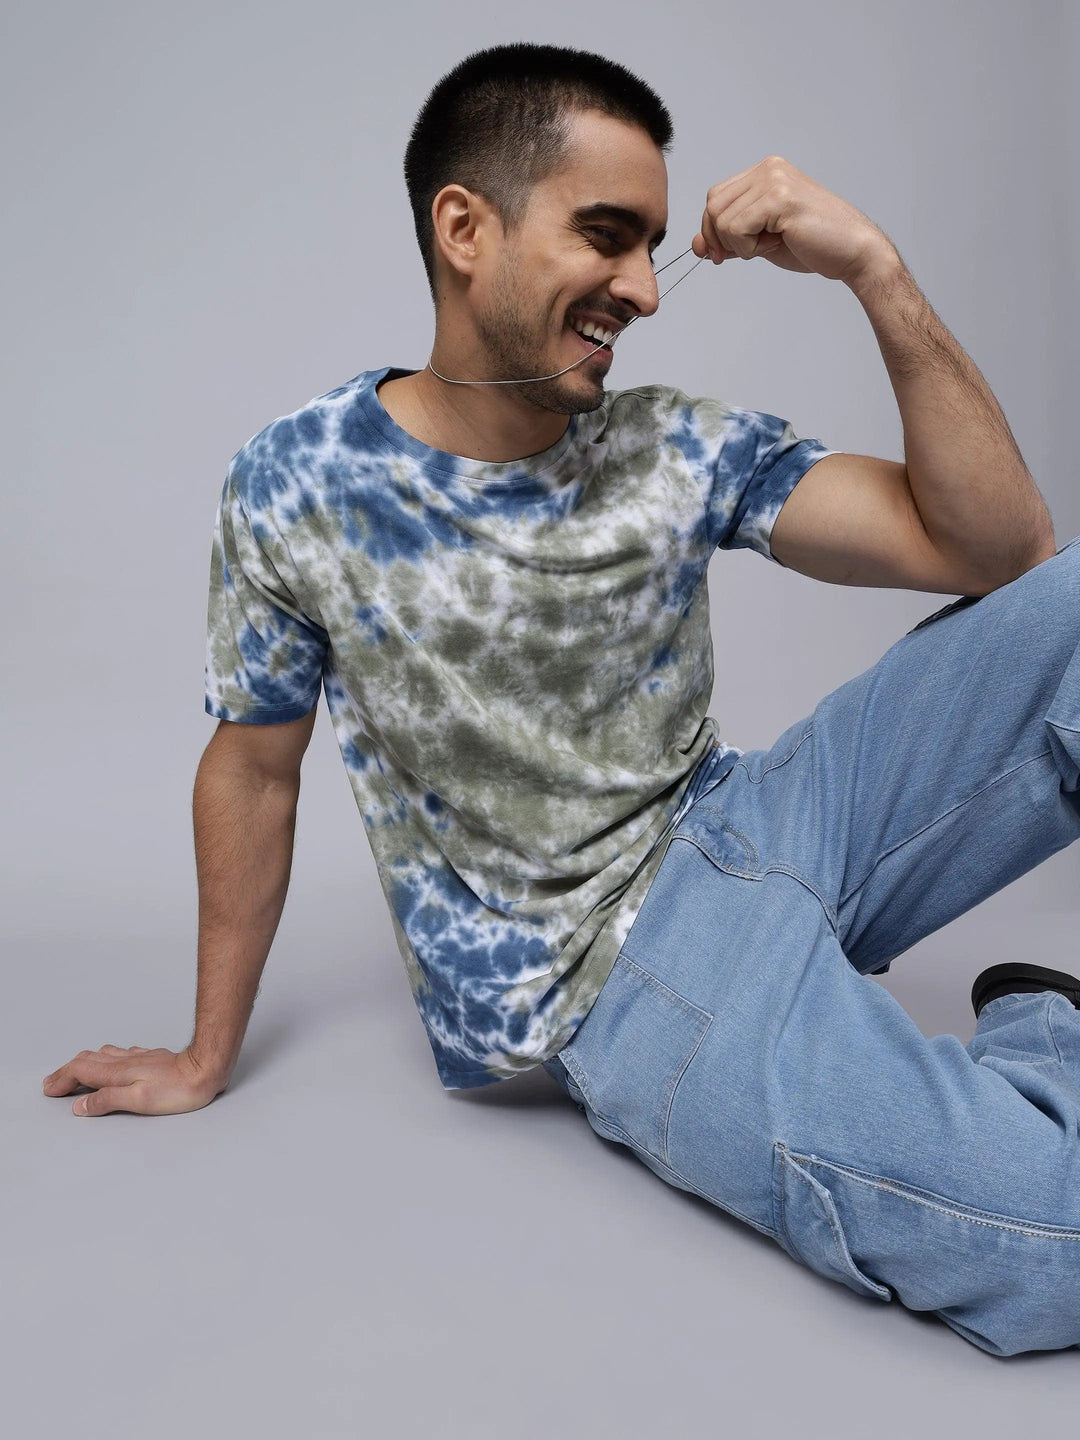 Men's Multi Color Pure Cotton Tie & Dye T-shirt - Peplos Jeans 